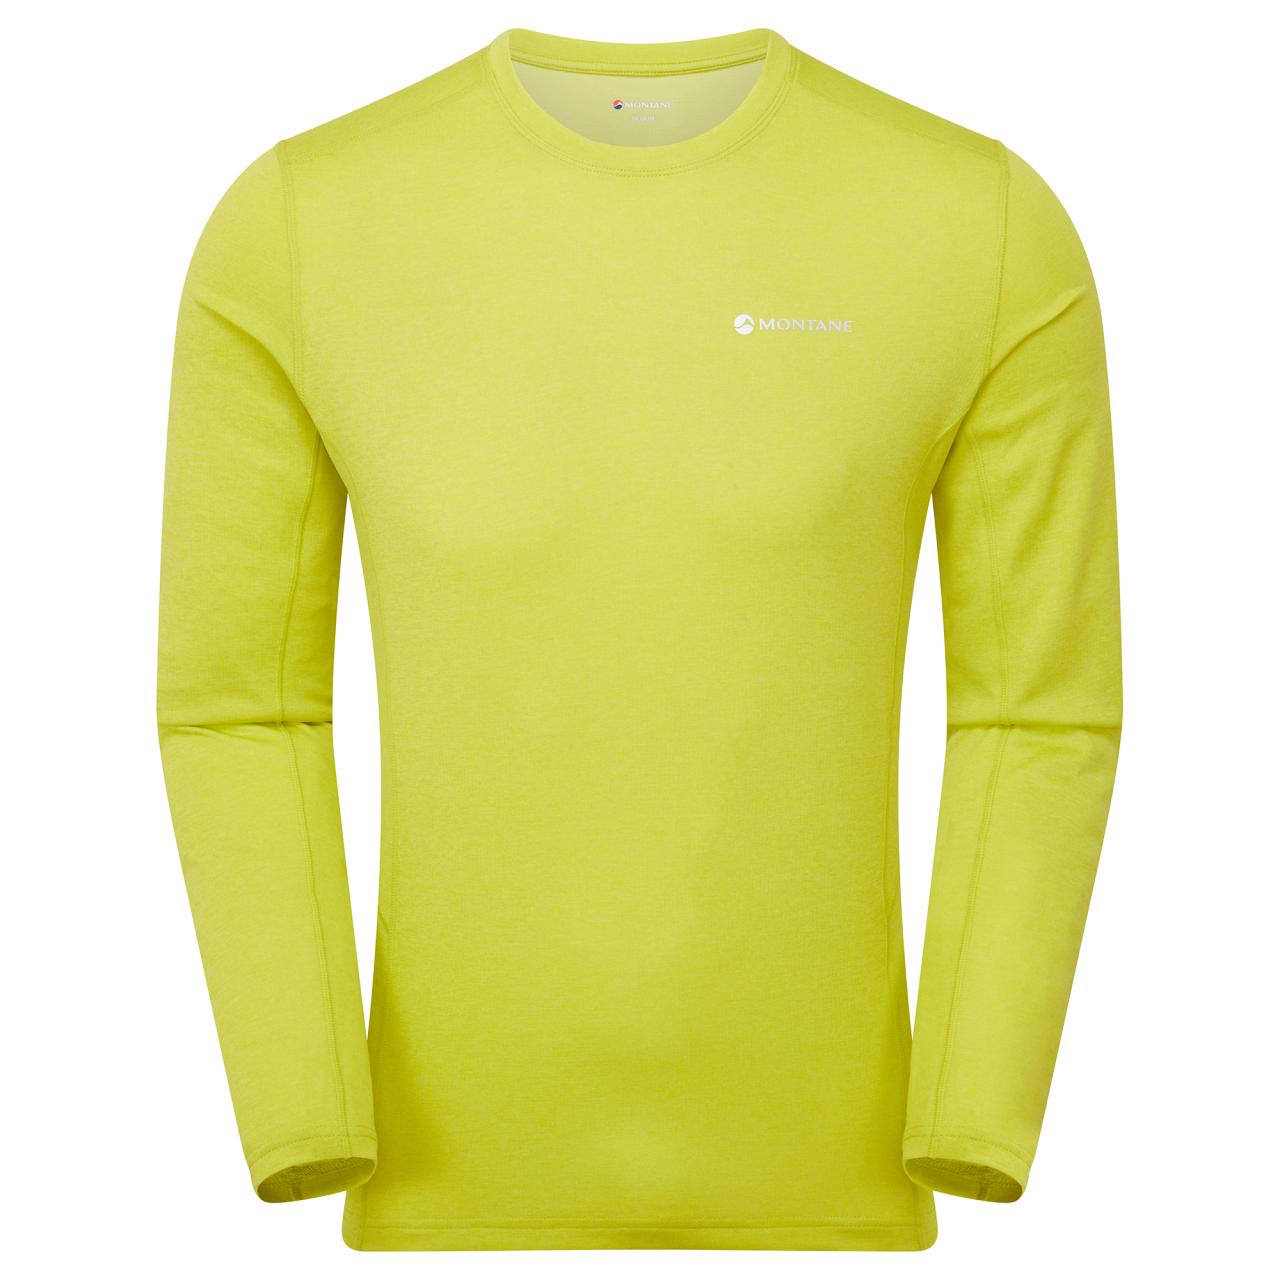 DART LONG SLEEVE T-SHIRT-CITRUS SPRING-XL pánské triko dlouhý ruk. žlutozelené